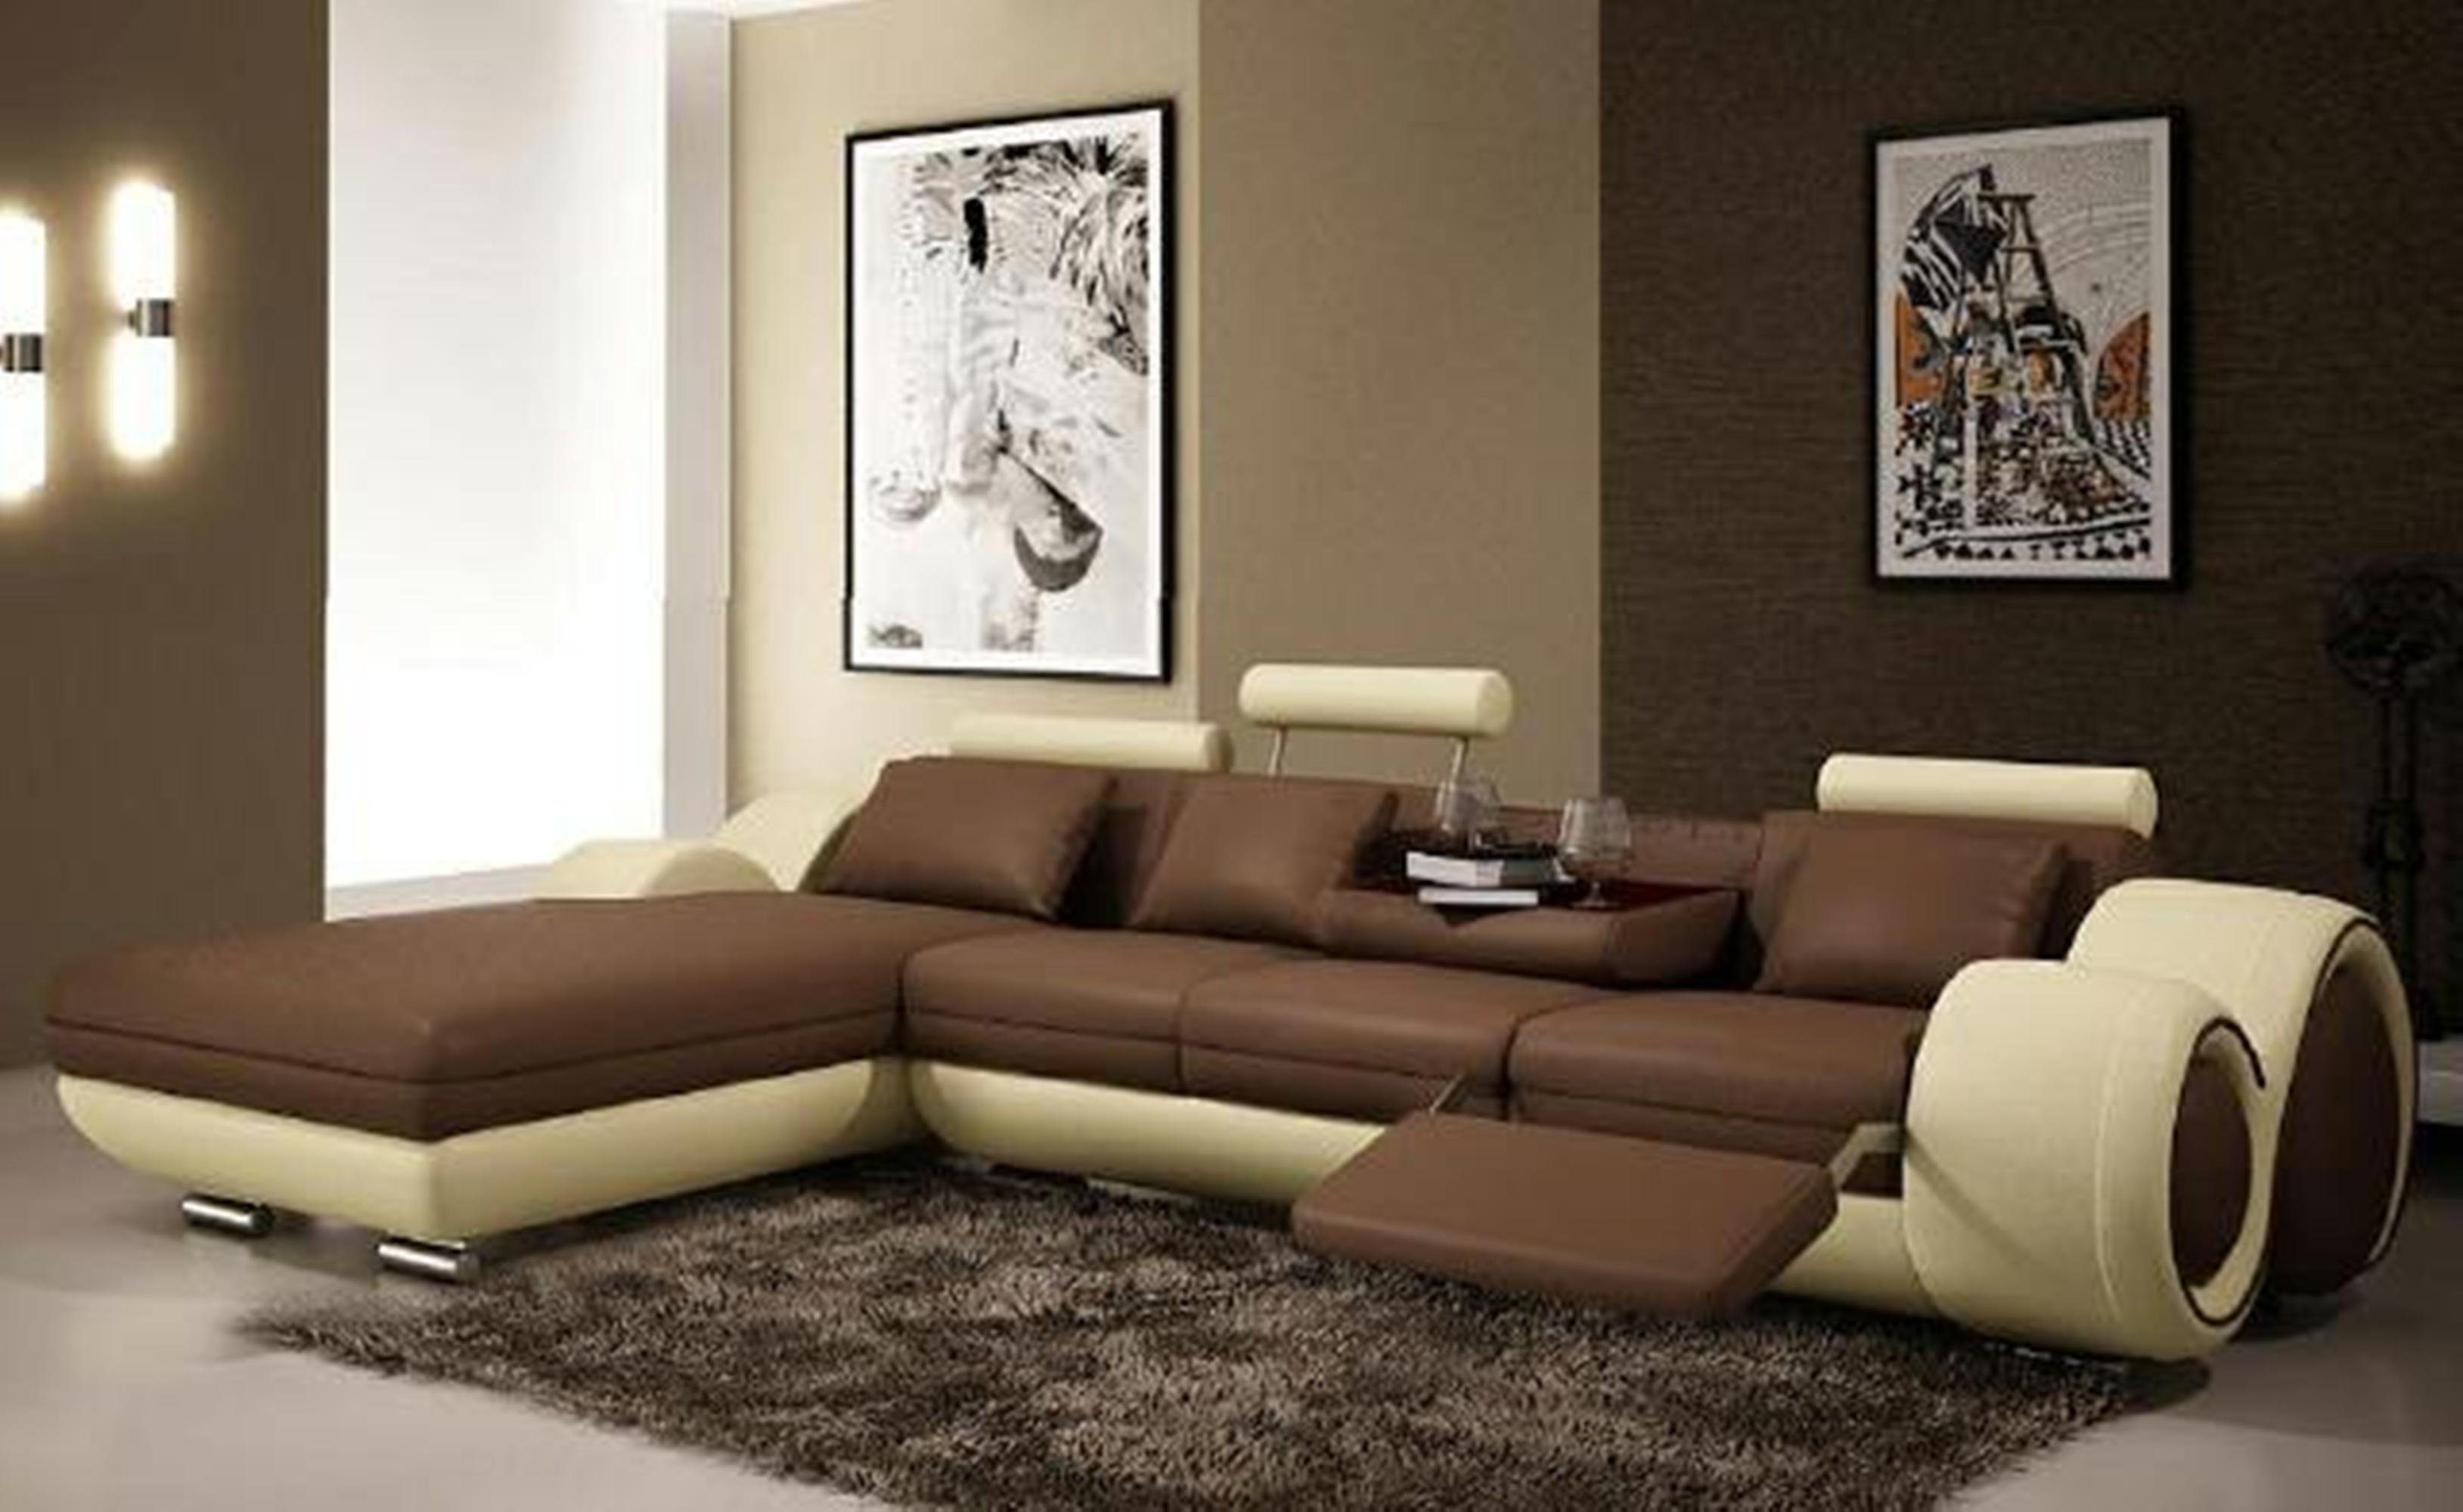 JVmoebel Ecksofa Modernes Ledersofa Ecksofa in Europe Couch braun-beige Polster Made Sofa, Wohnzimmer